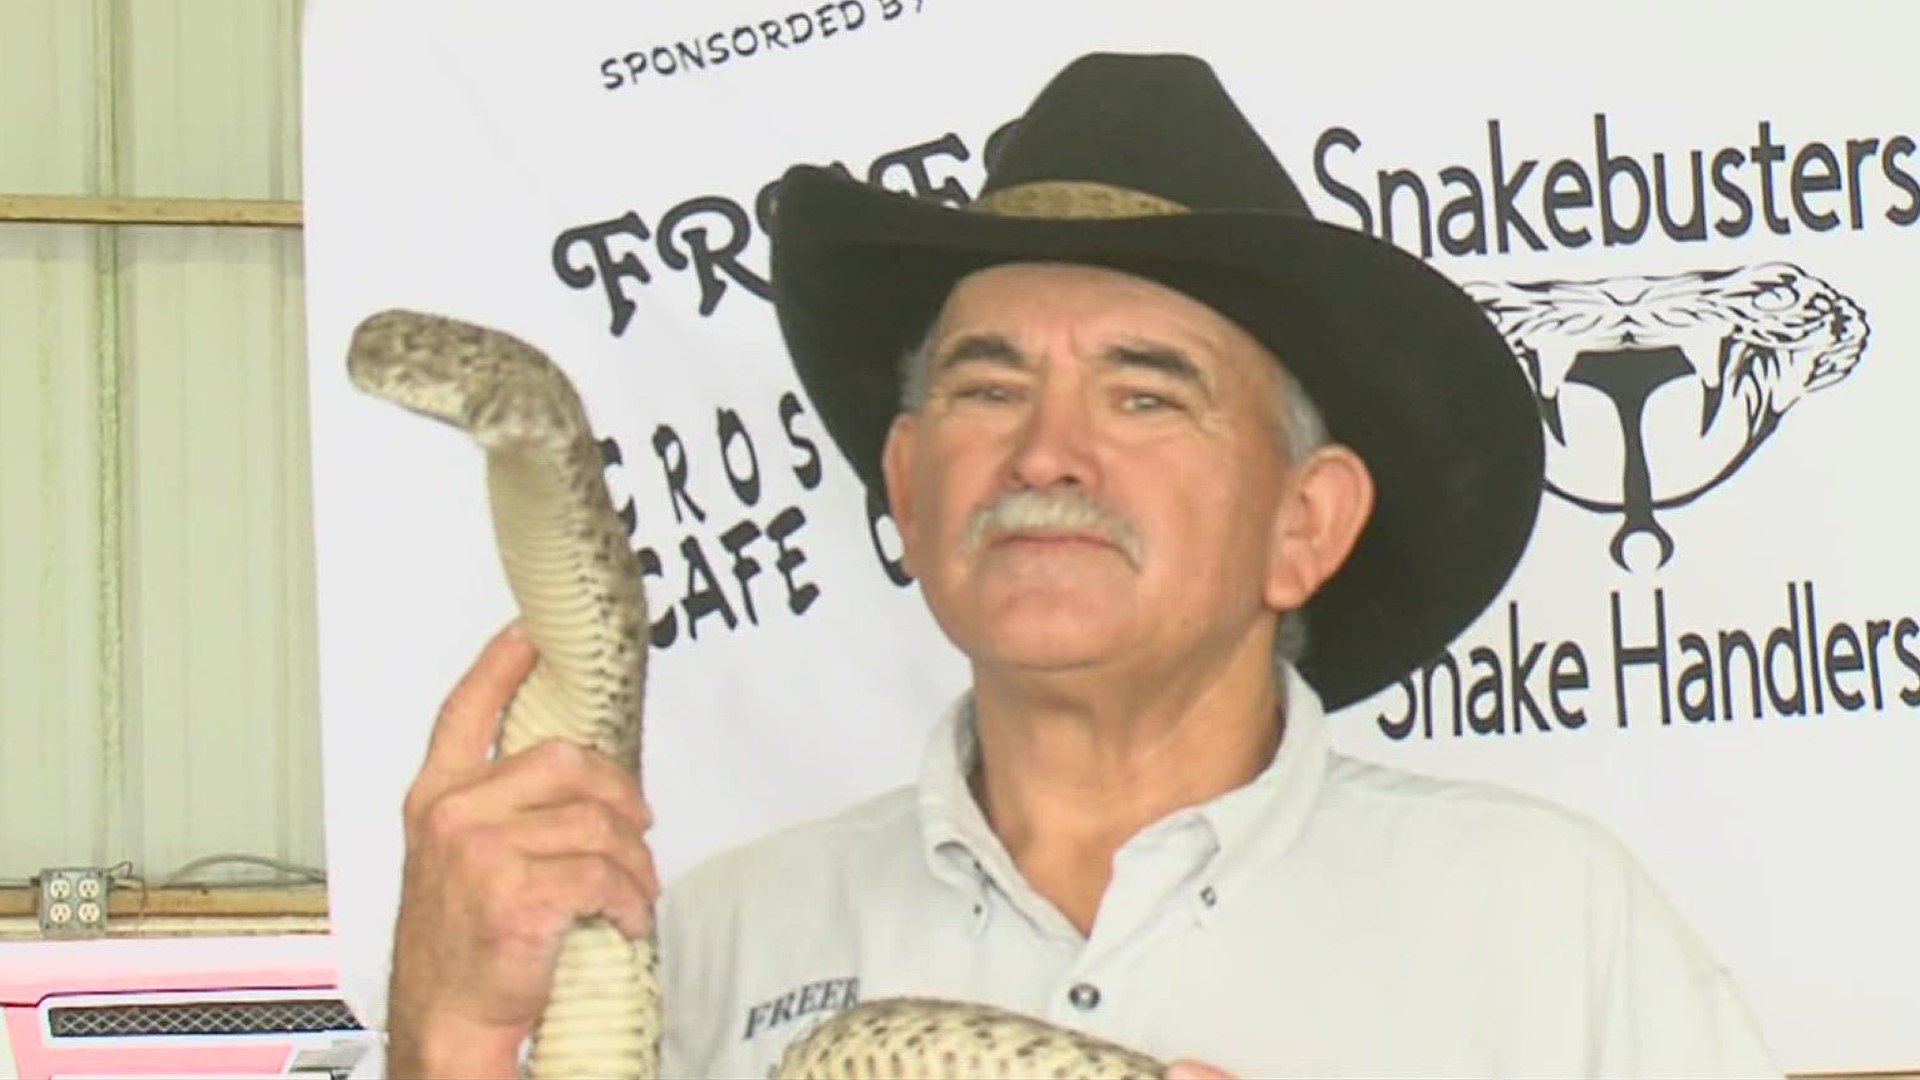 Freer rattlesnake handler dies from bite at Rattlesnake Roundup